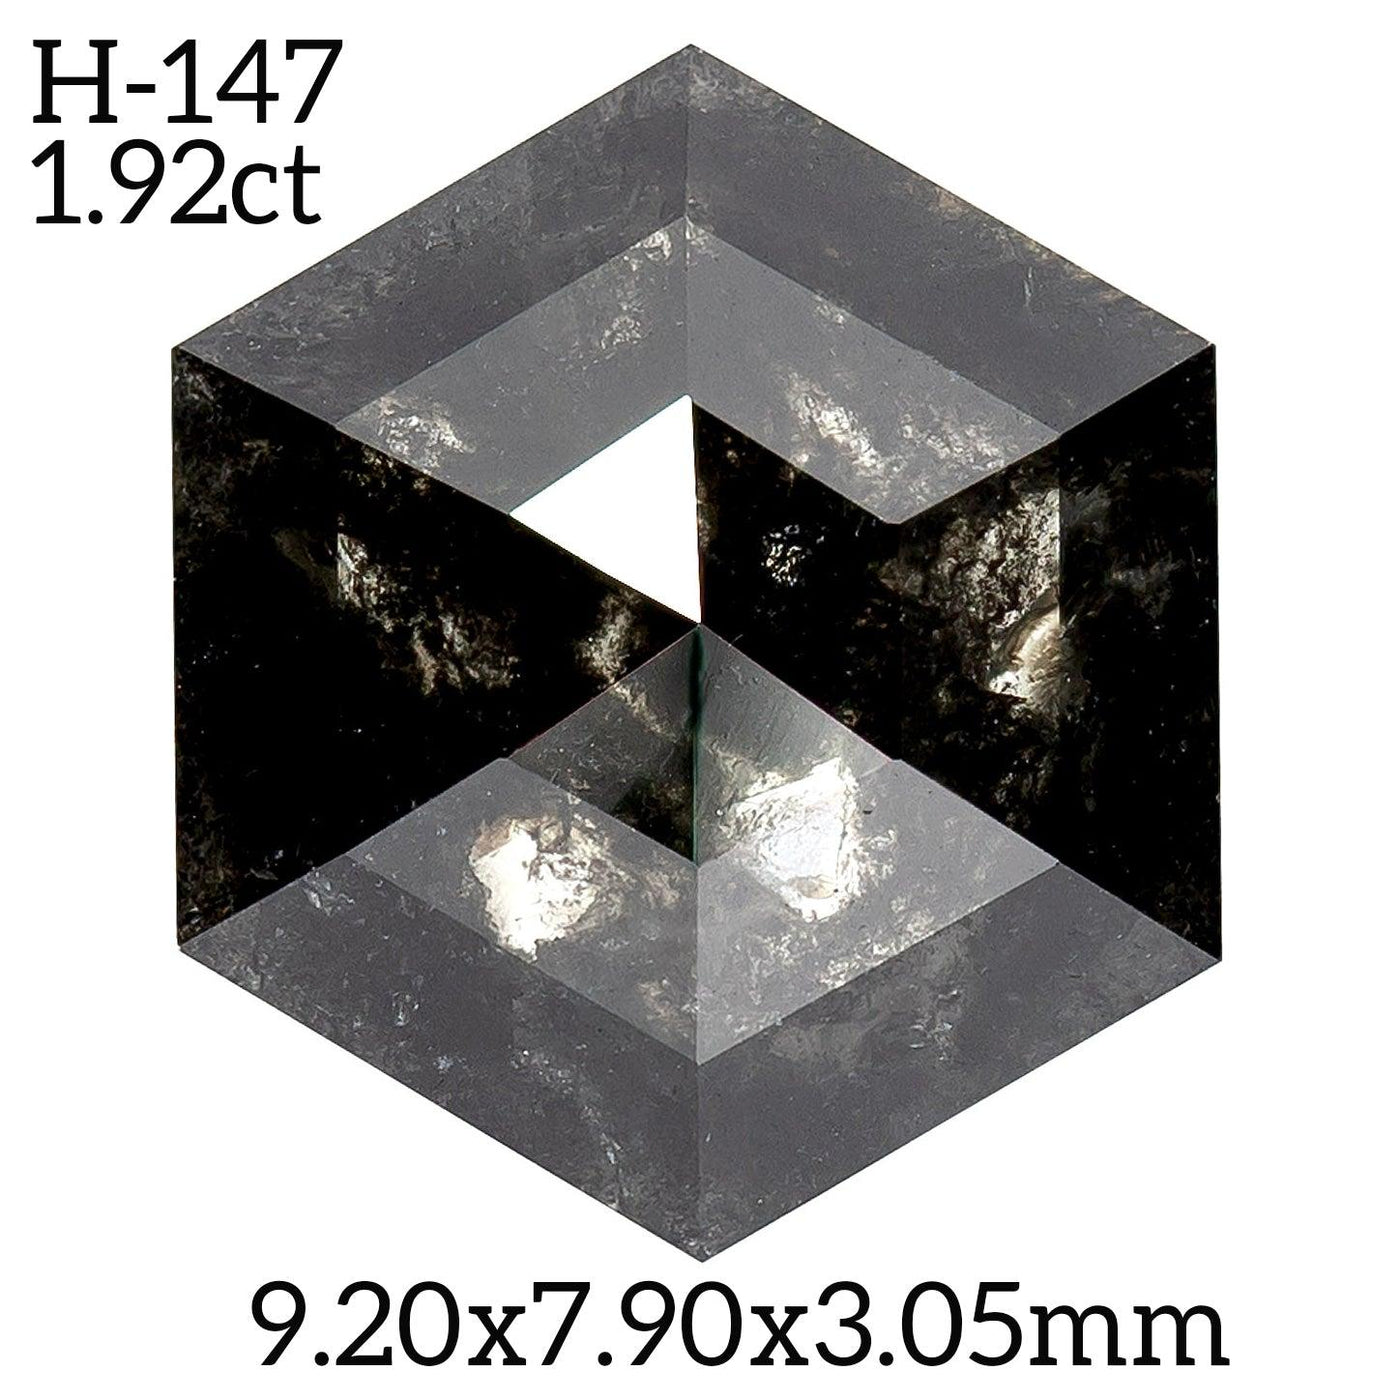 H147 - Salt and pepper hexagon diamond